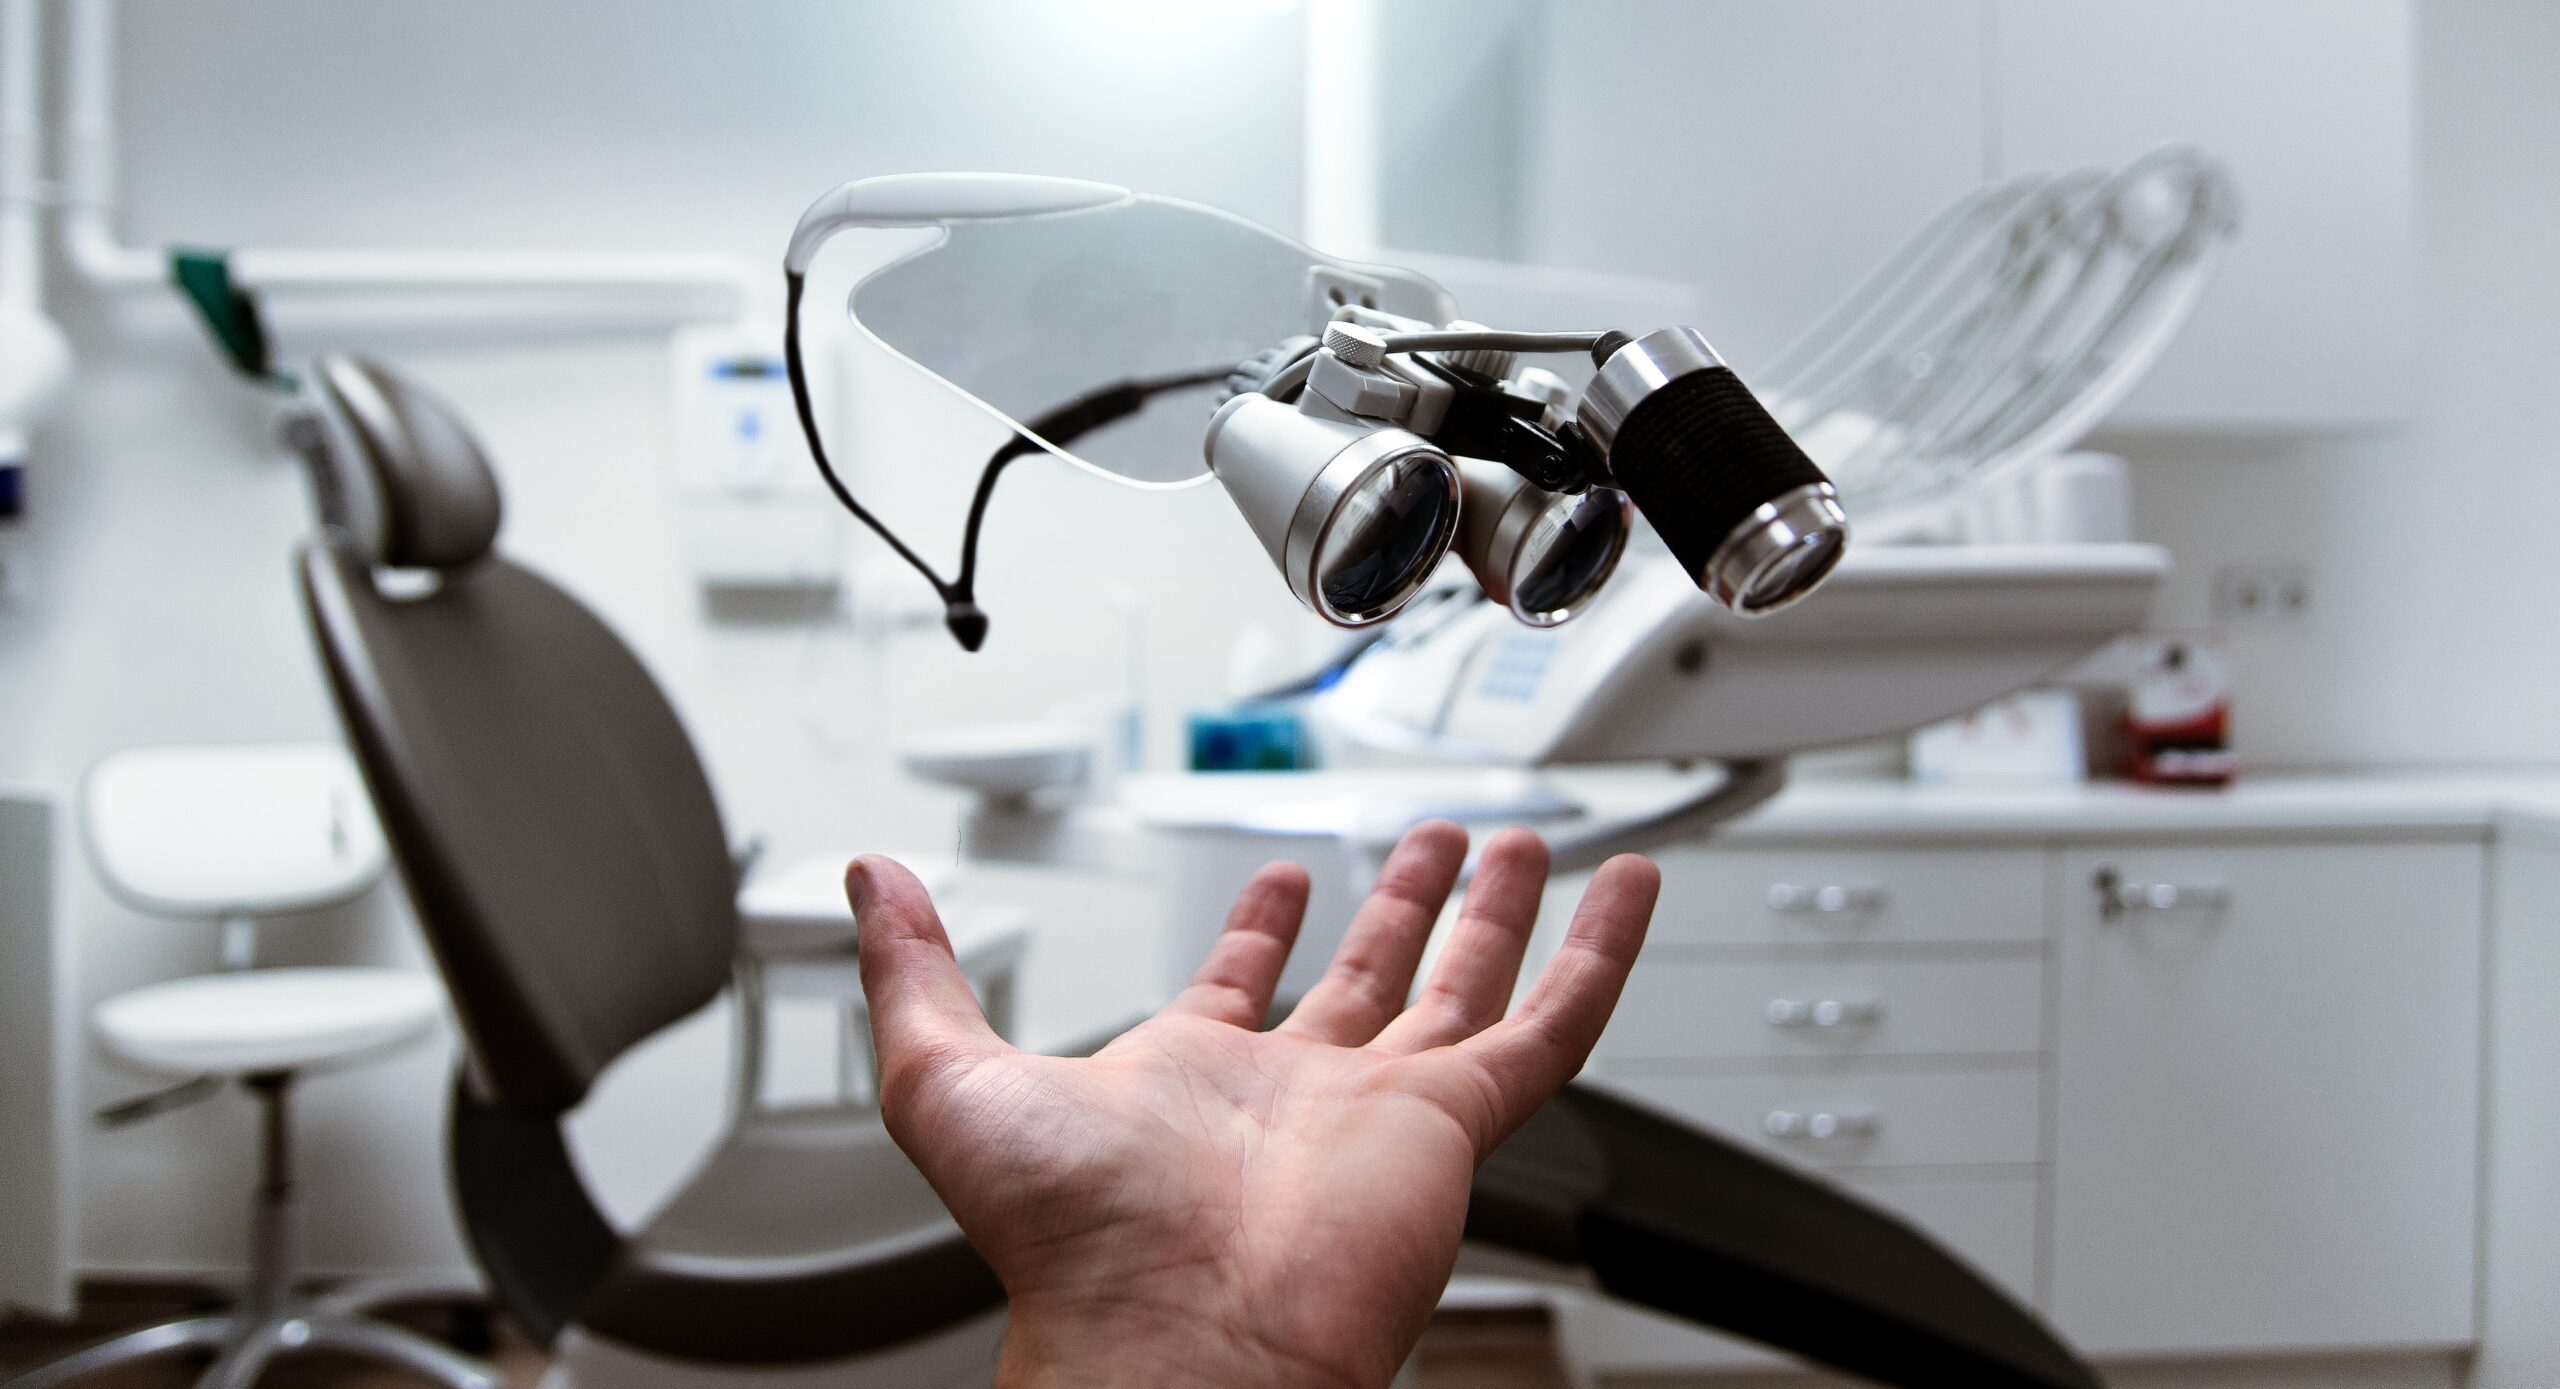 optometrist equipment and hand